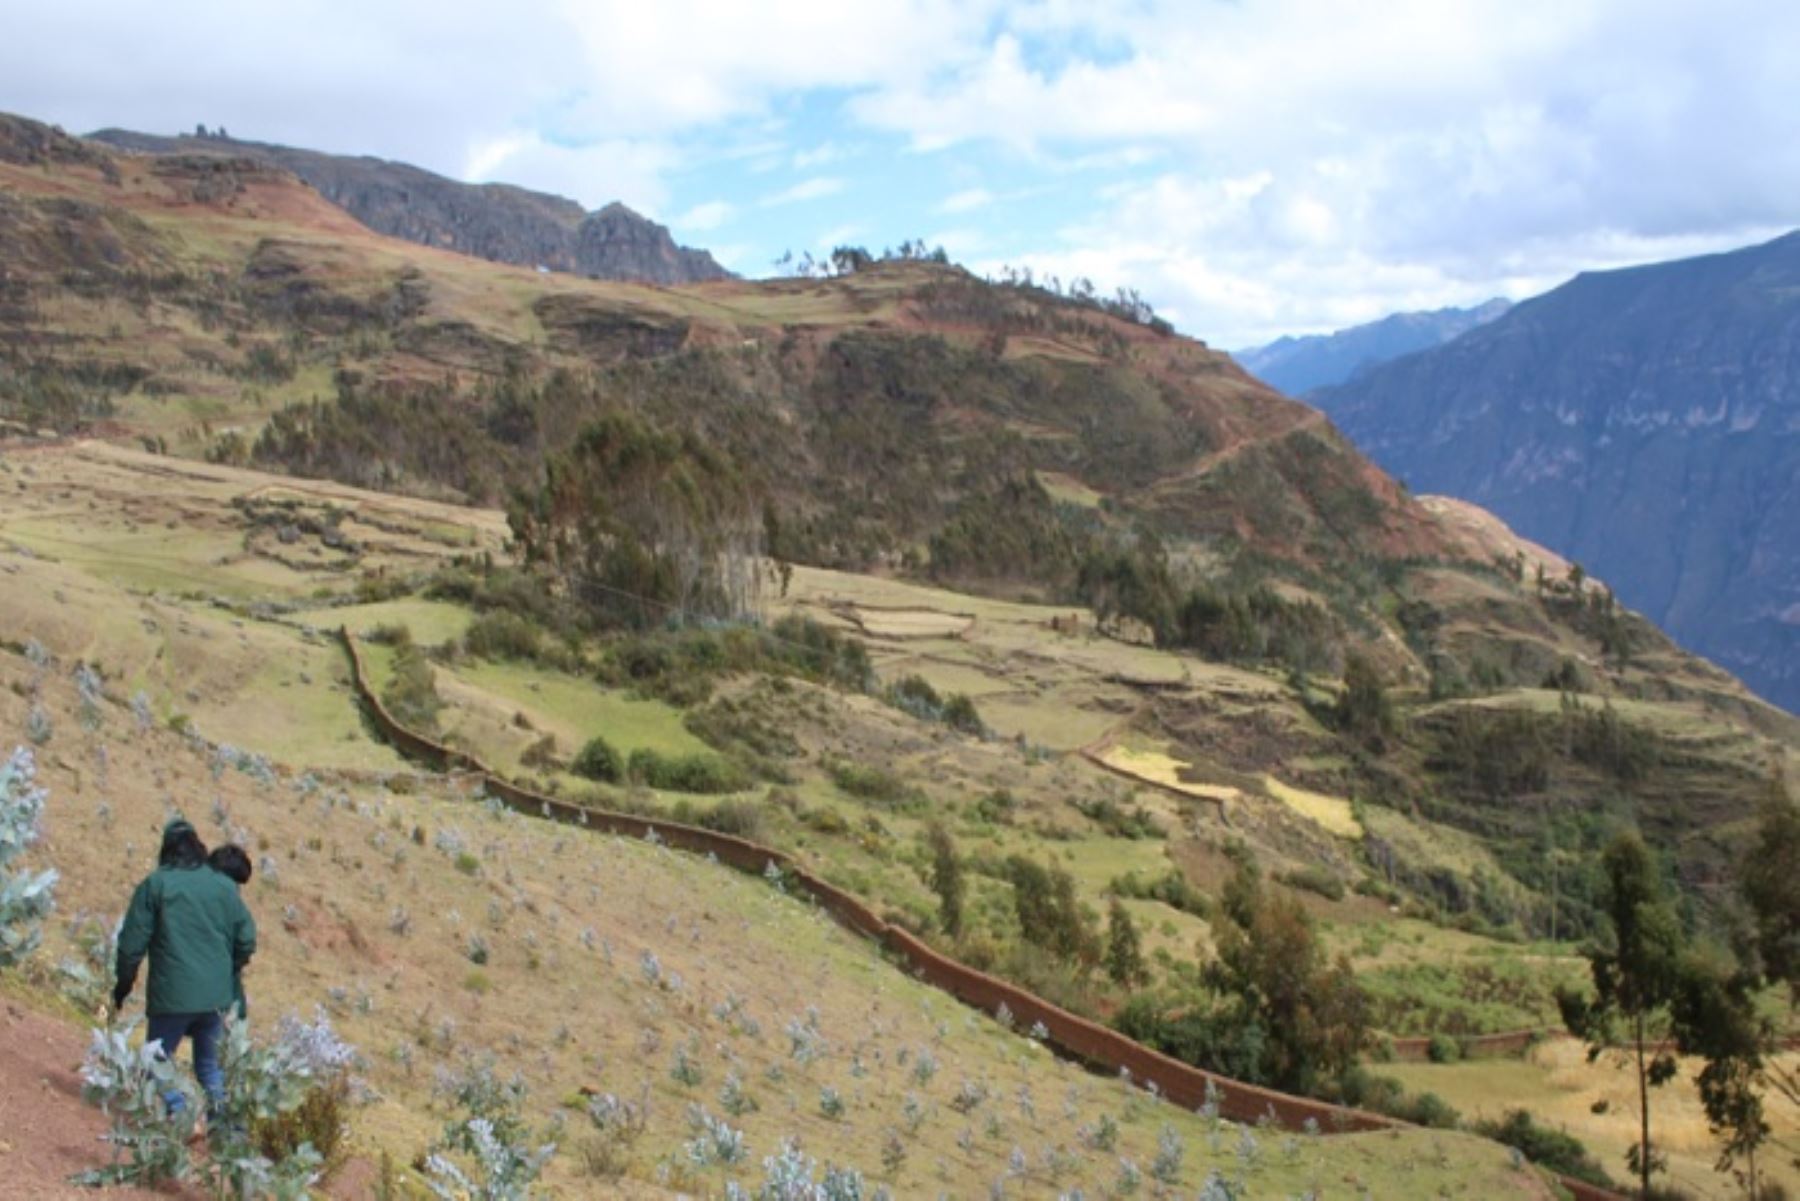 Luego de tres años y medio de ejecución, a través de Agro Rural, el Ministerio de Agricultura y Riego (Minagri), anunció la pronta culminación del proyecto “Forestación y Reforestación para Cobertura y Protección de Suelos en los centros poblados de la provincia de Huari, región Ancash”.